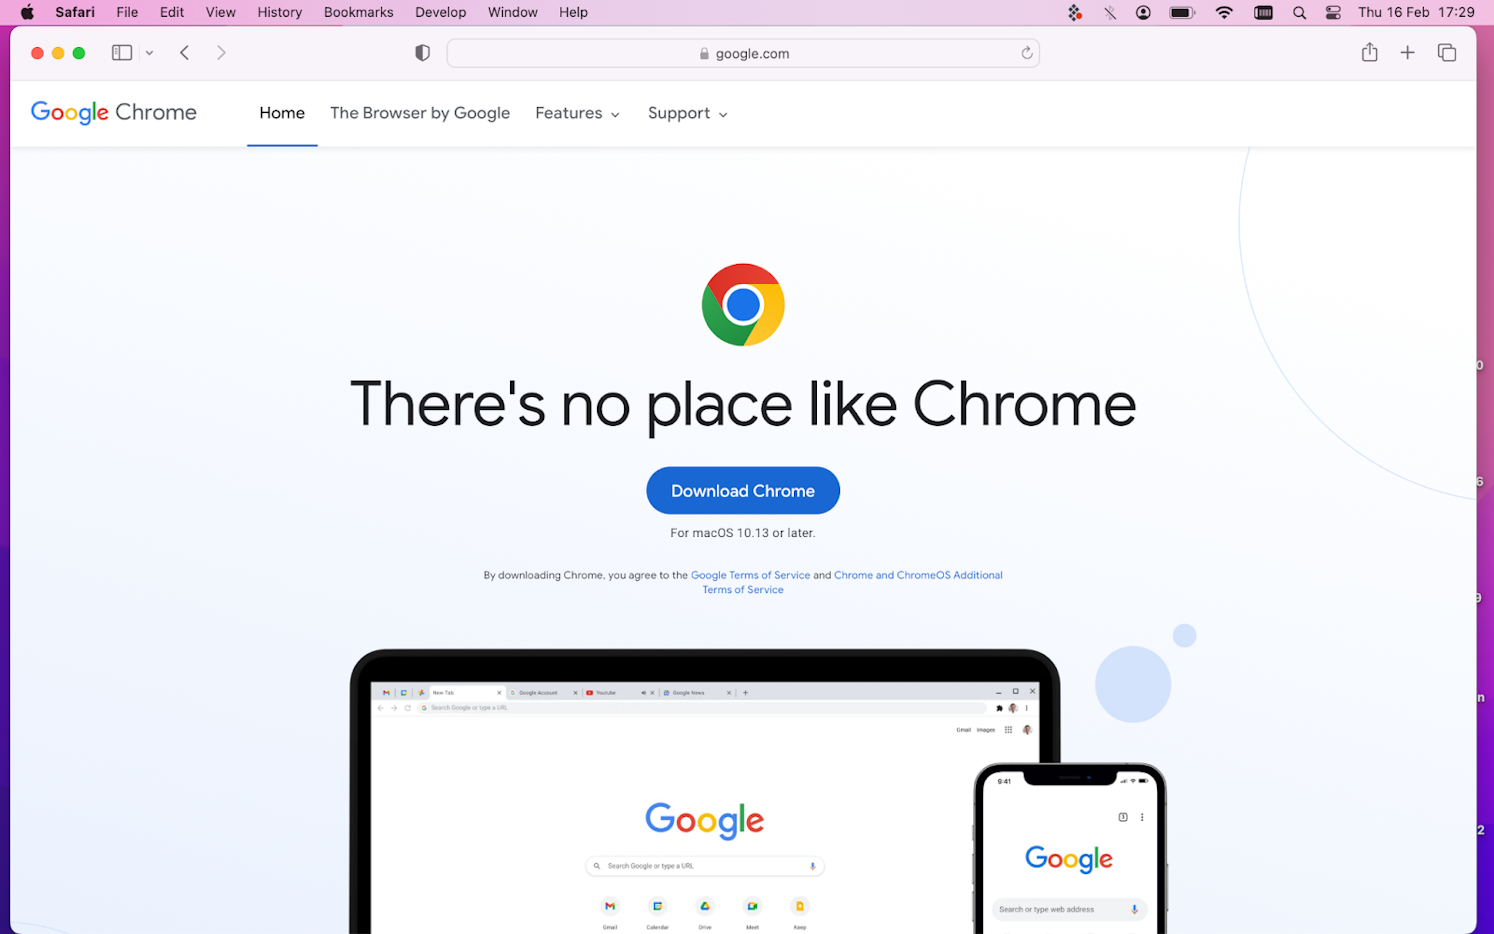 how to download google chrome onto a mac